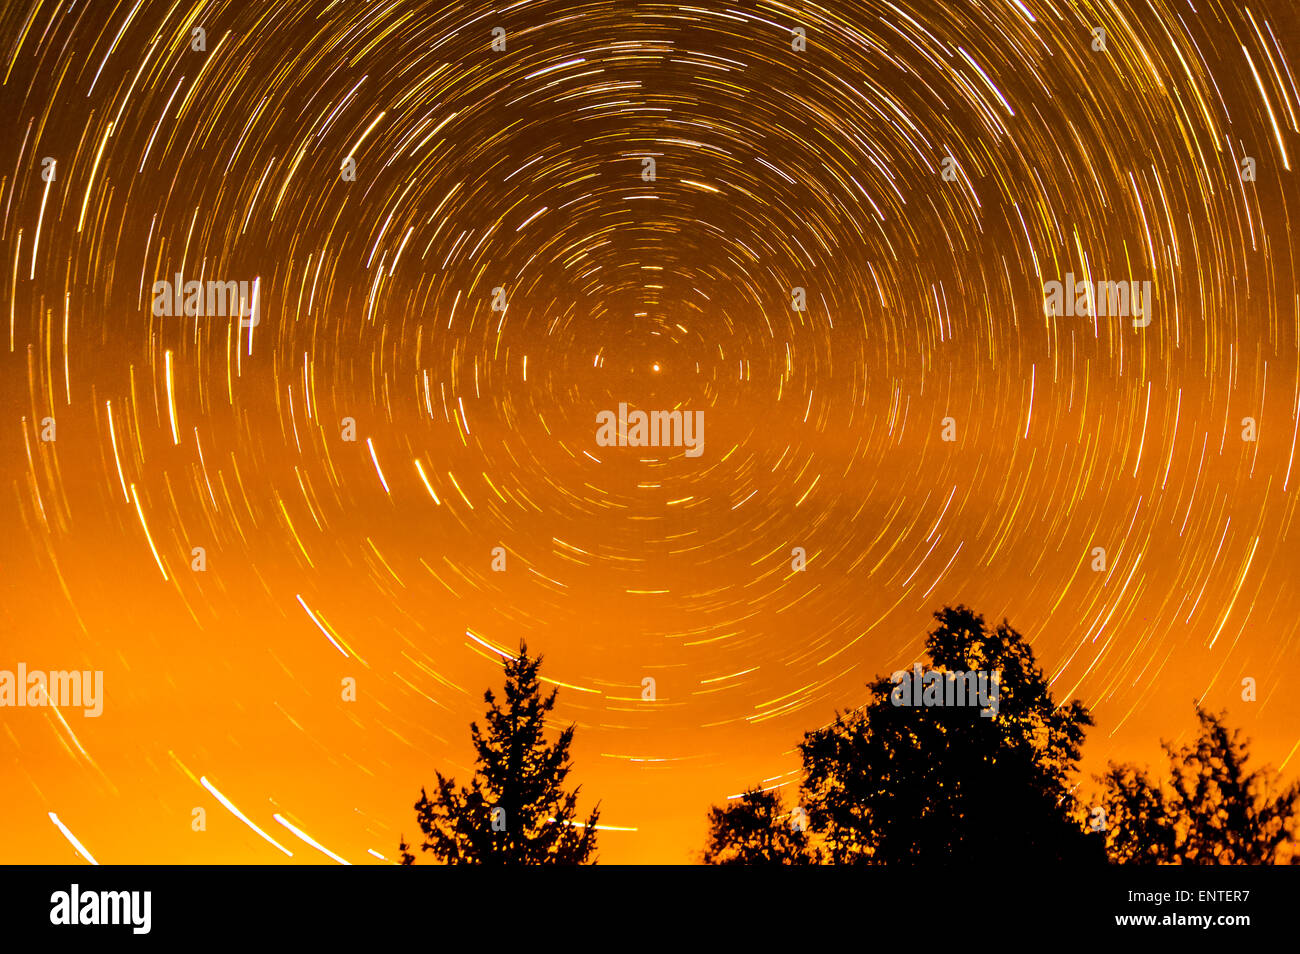 Une star trail image montrant le mouvement des étoiles comme la Terre se déplace sur son axe dans le ciel nocturne, Ecosse, Royaume-Uni Banque D'Images